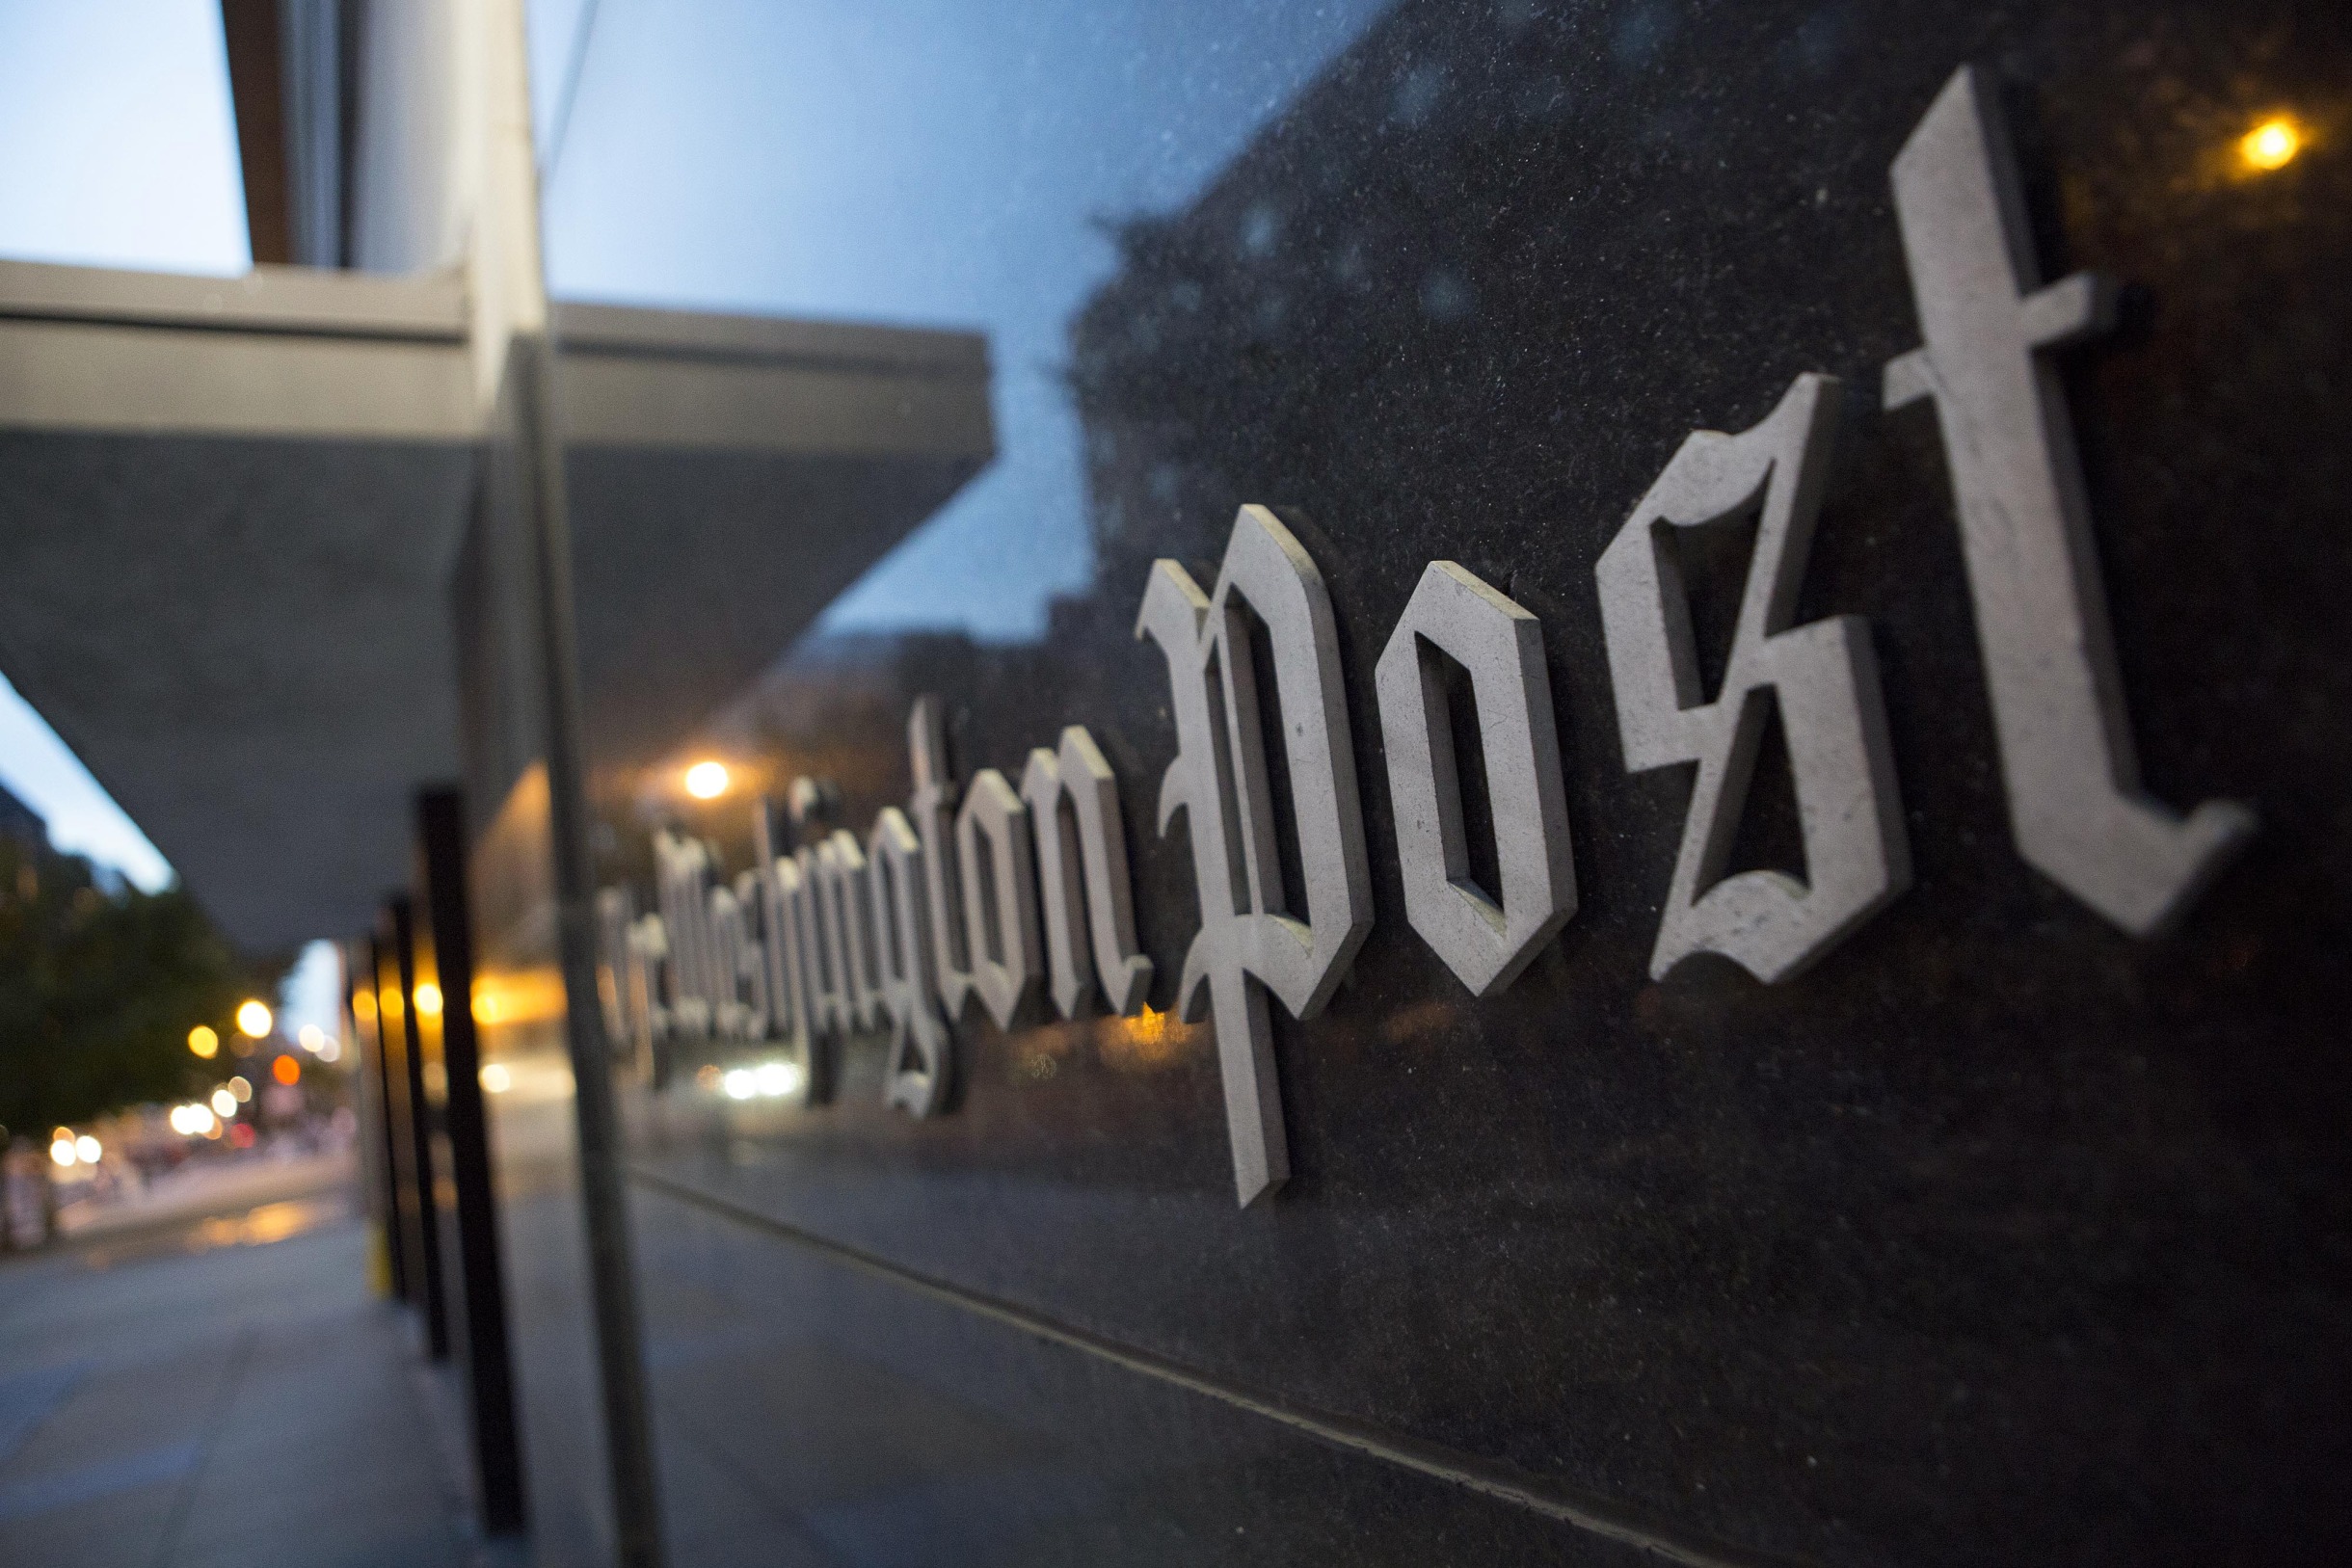 Amazon's Jeff Bezos To Buy Washington Post for $250 Million